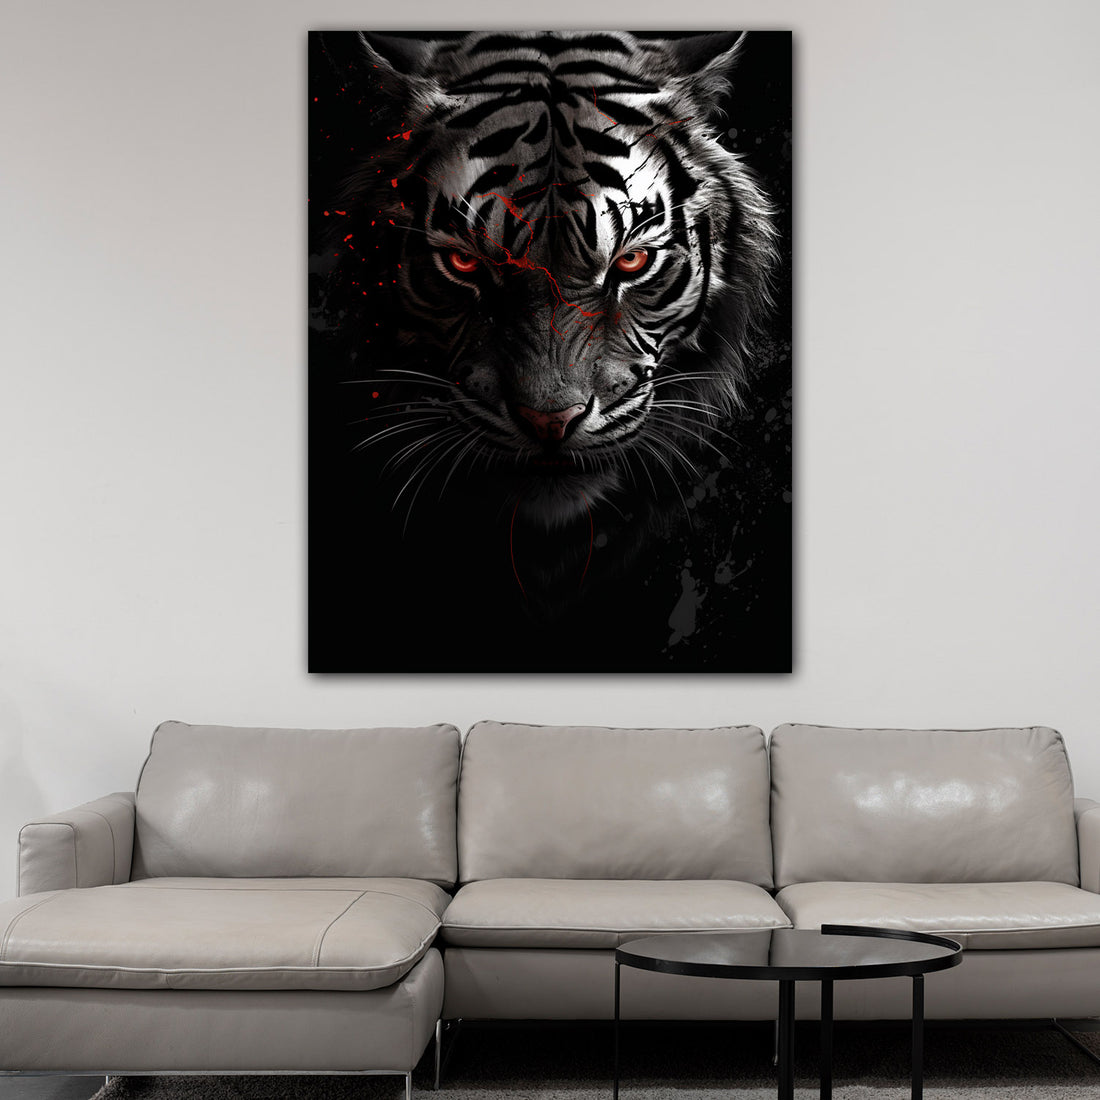 Wandbild Tiger abstrakt mit roten Augen